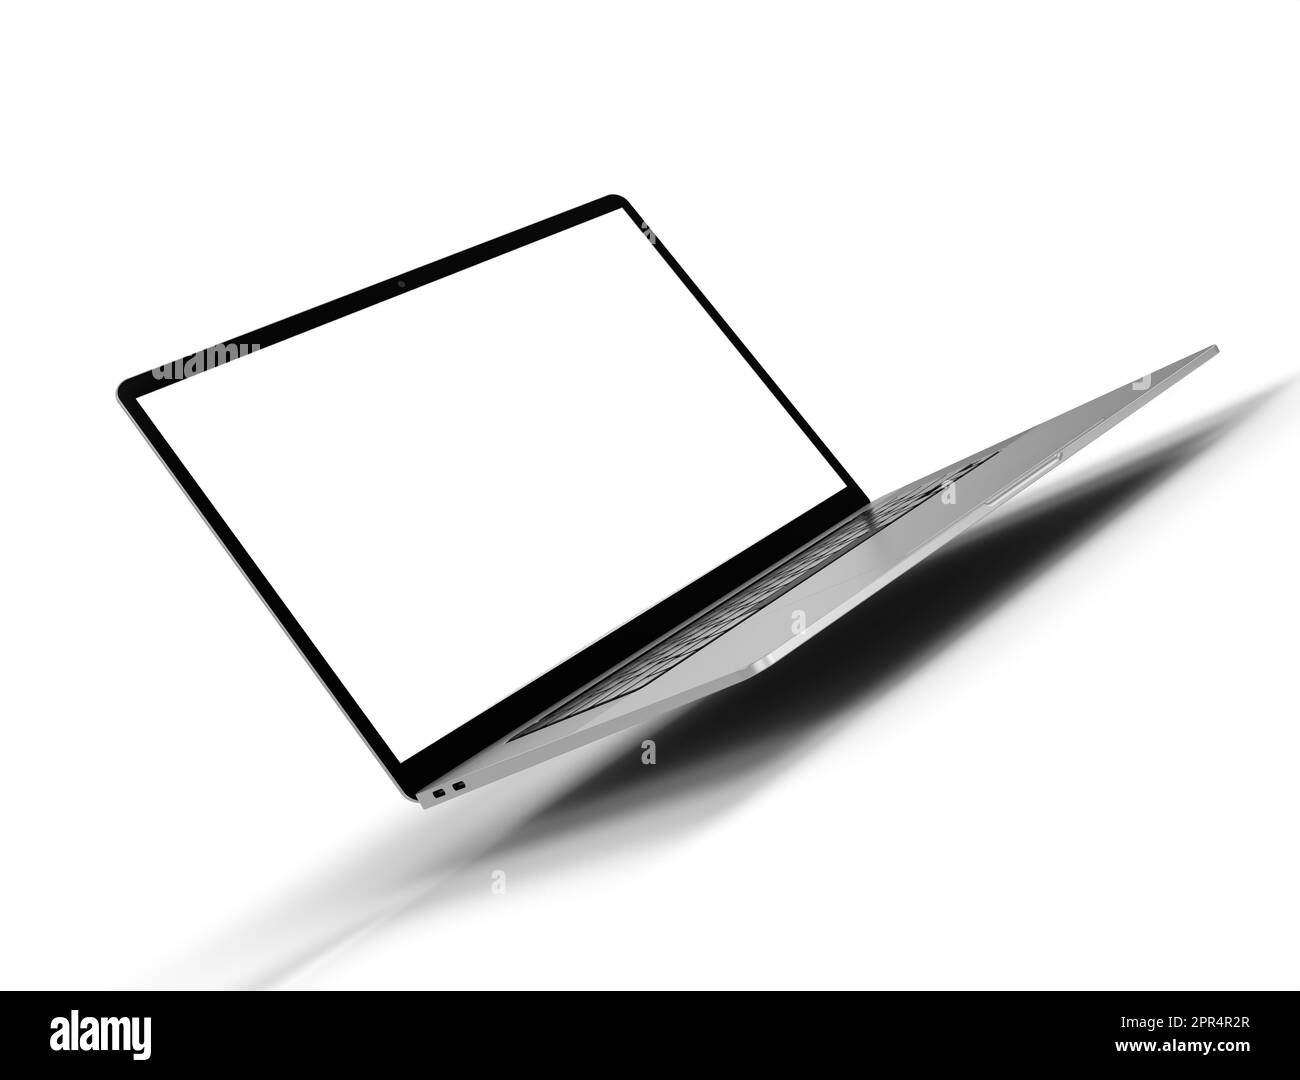 Ordinateur portable réaliste - maquette d'ordinateur portable, avec écran vide pour votre conception, isolé sur fond blanc Détails de haute qualité - rendu 3D Banque D'Images